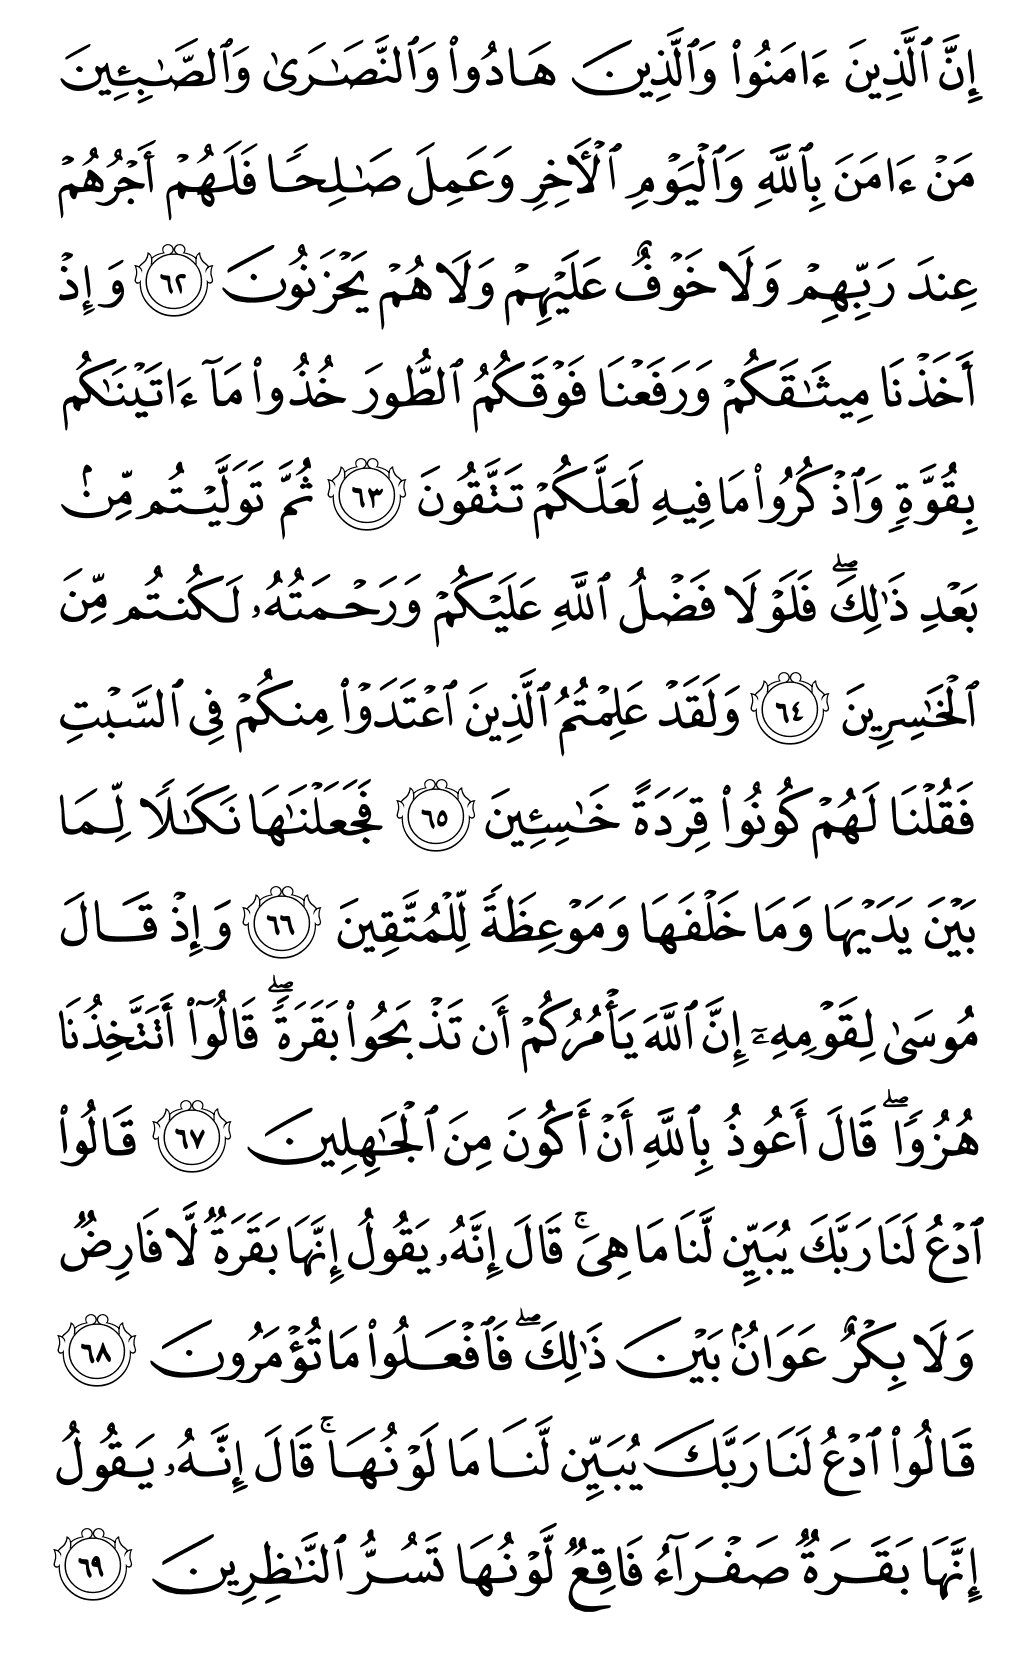 الصفحة رقم 10 من القرآن الكريم